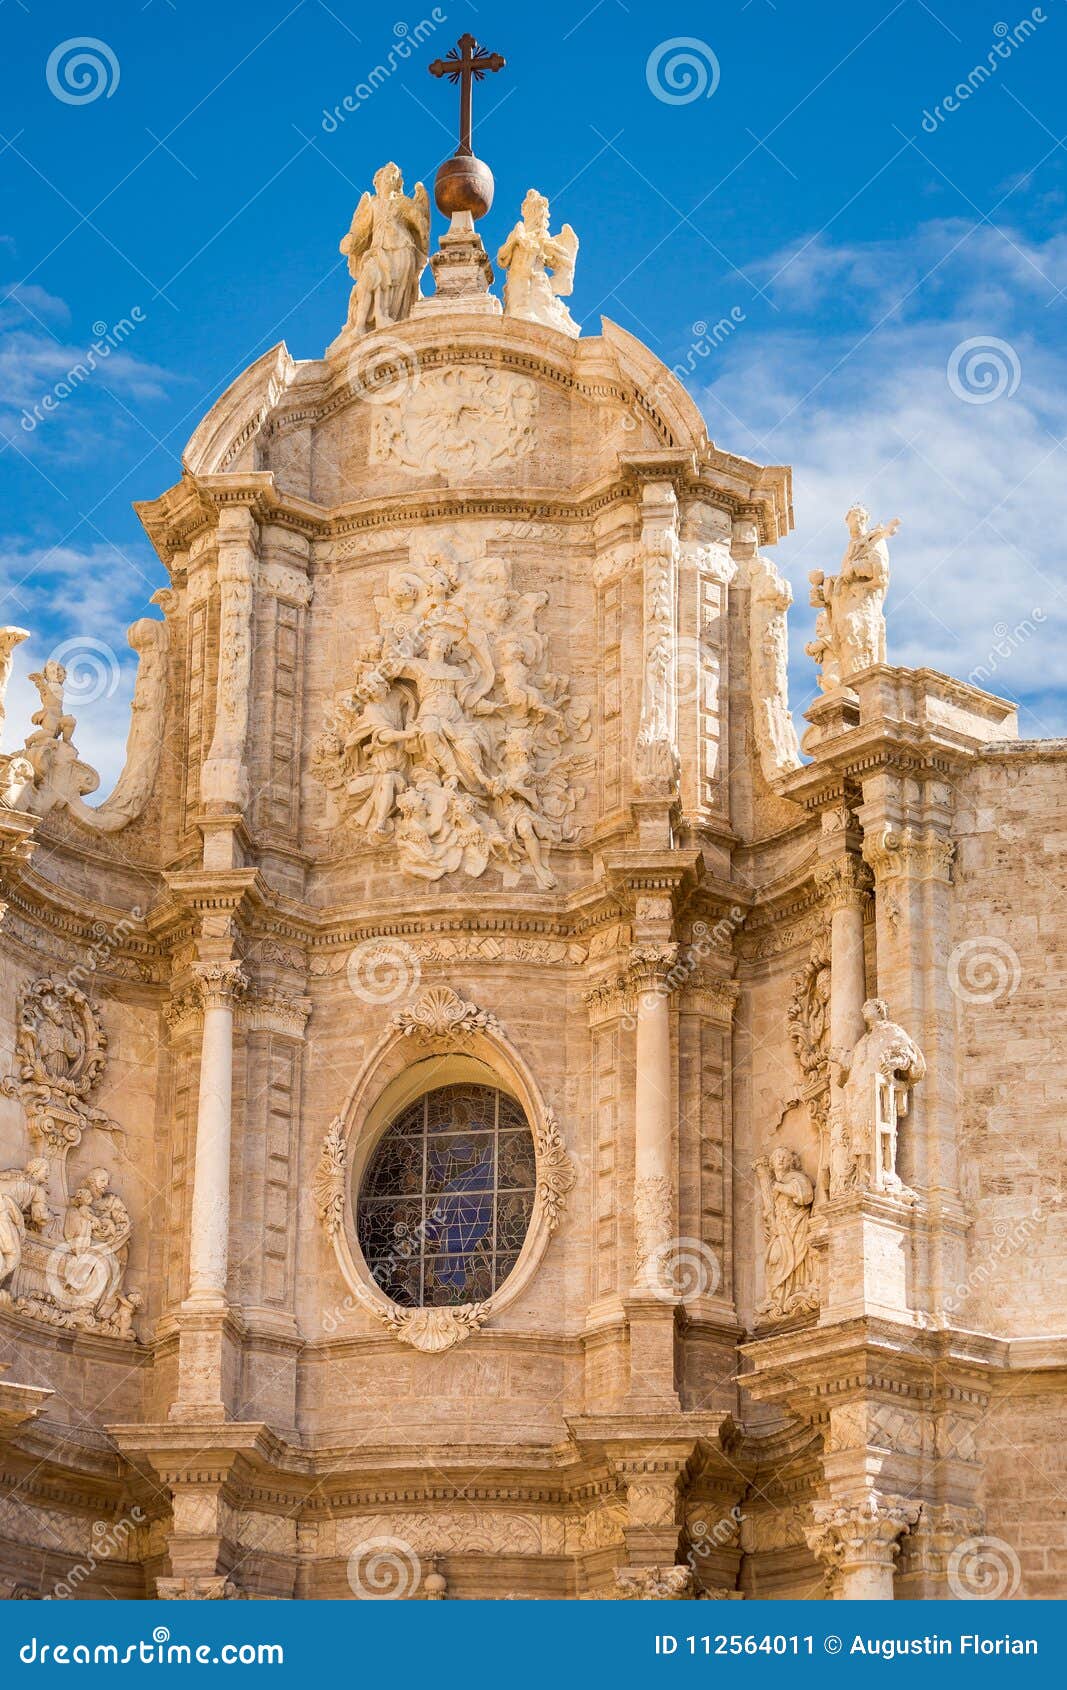 valencia cathedral - puerta de los hierros